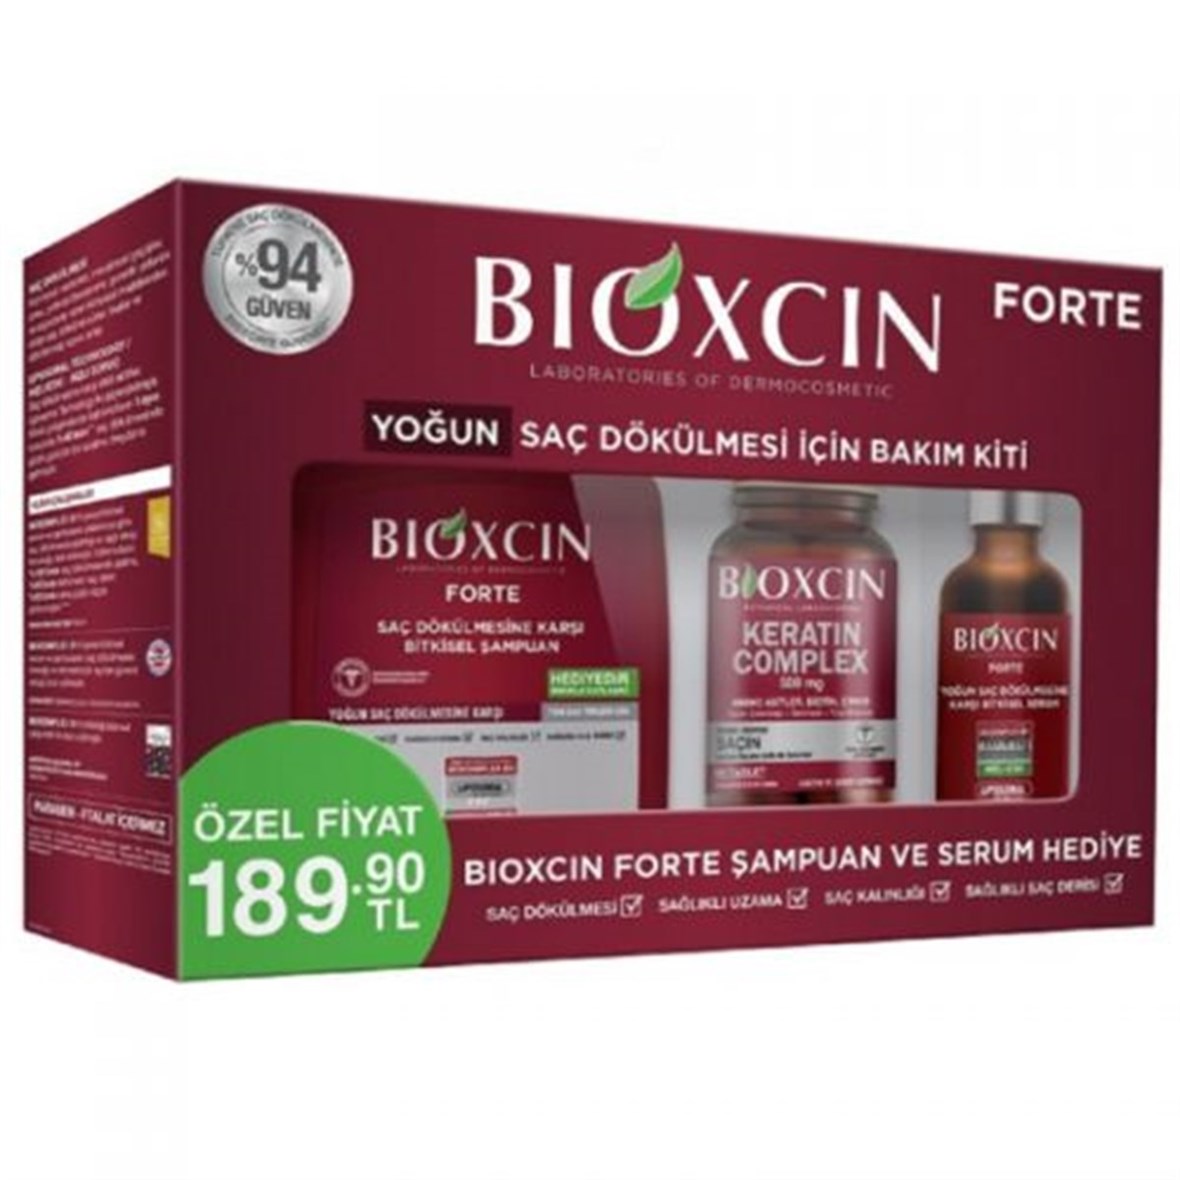 Bioxin Forte Yoğun Saç Dökülmesi İçin Bakım Kiti Eczasepeti.com'da En Uygun  Fiyatlar ve Yorumlar